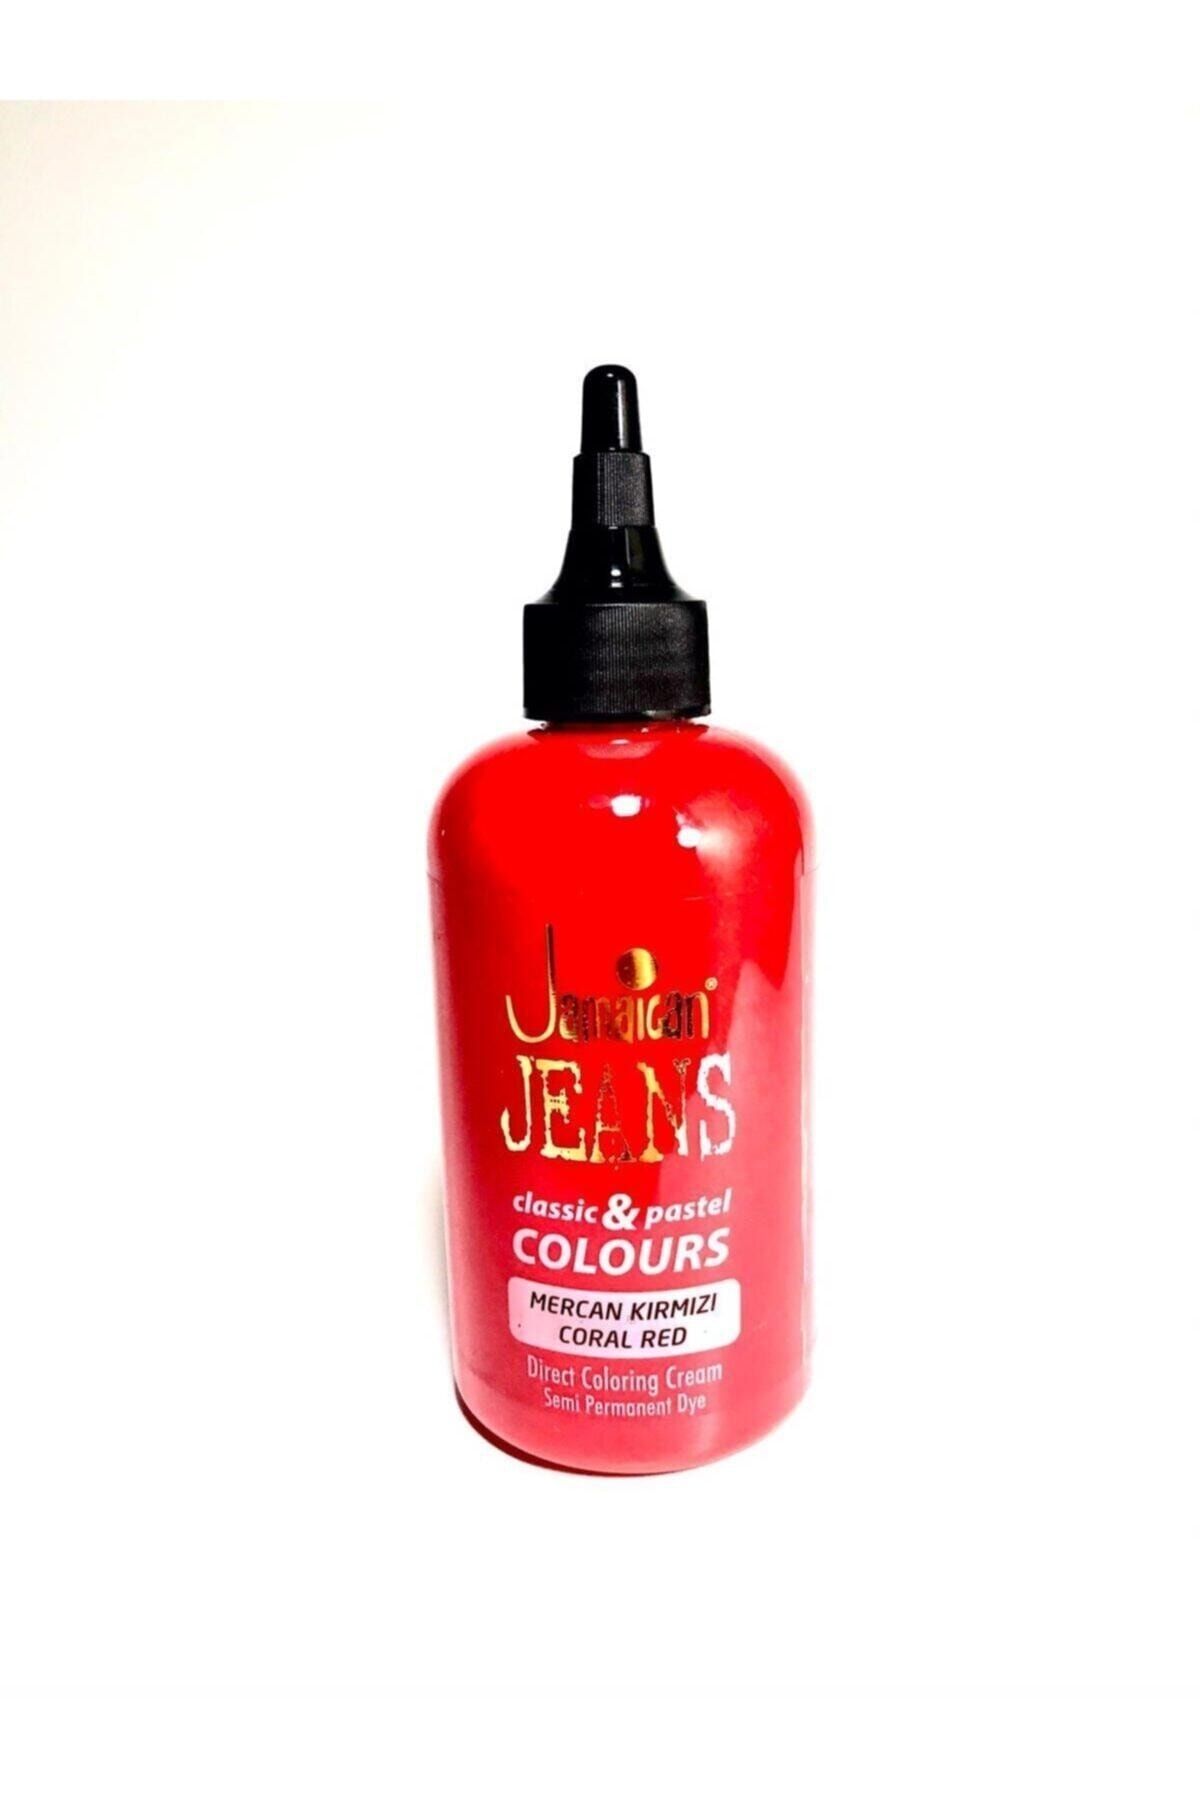 Jamaican Jean's Colour Saç Boyası Mercan Kırmızı 528